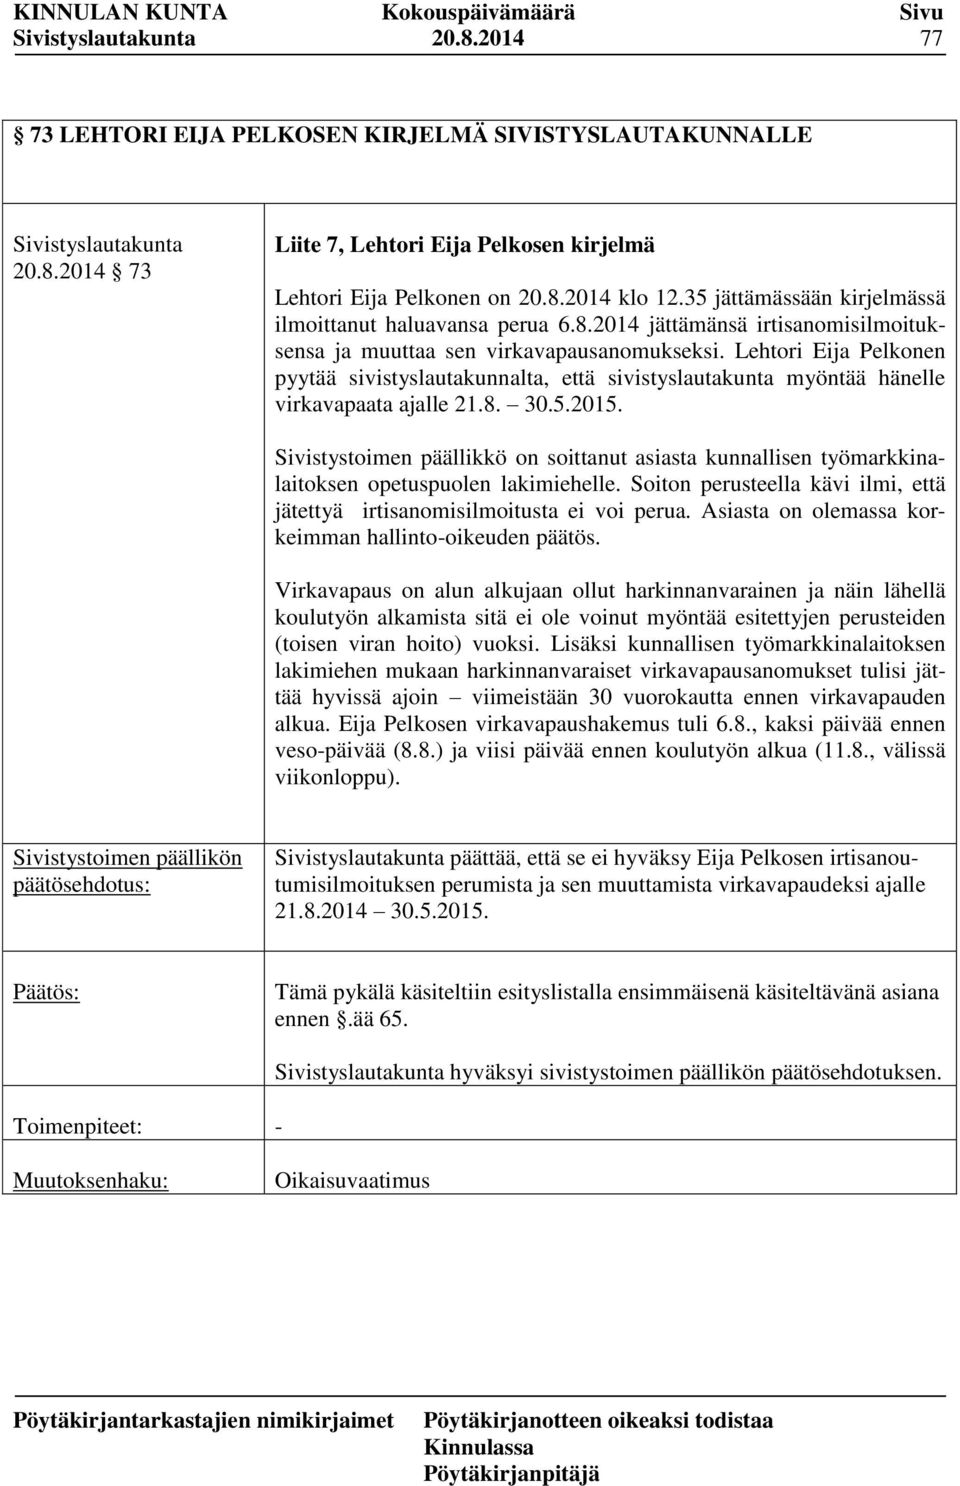 Lehtori Eija Pelkonen pyytää sivistyslautakunnalta, että sivistyslautakunta myöntää hänelle virkavapaata ajalle 21.8. 30.5.2015.